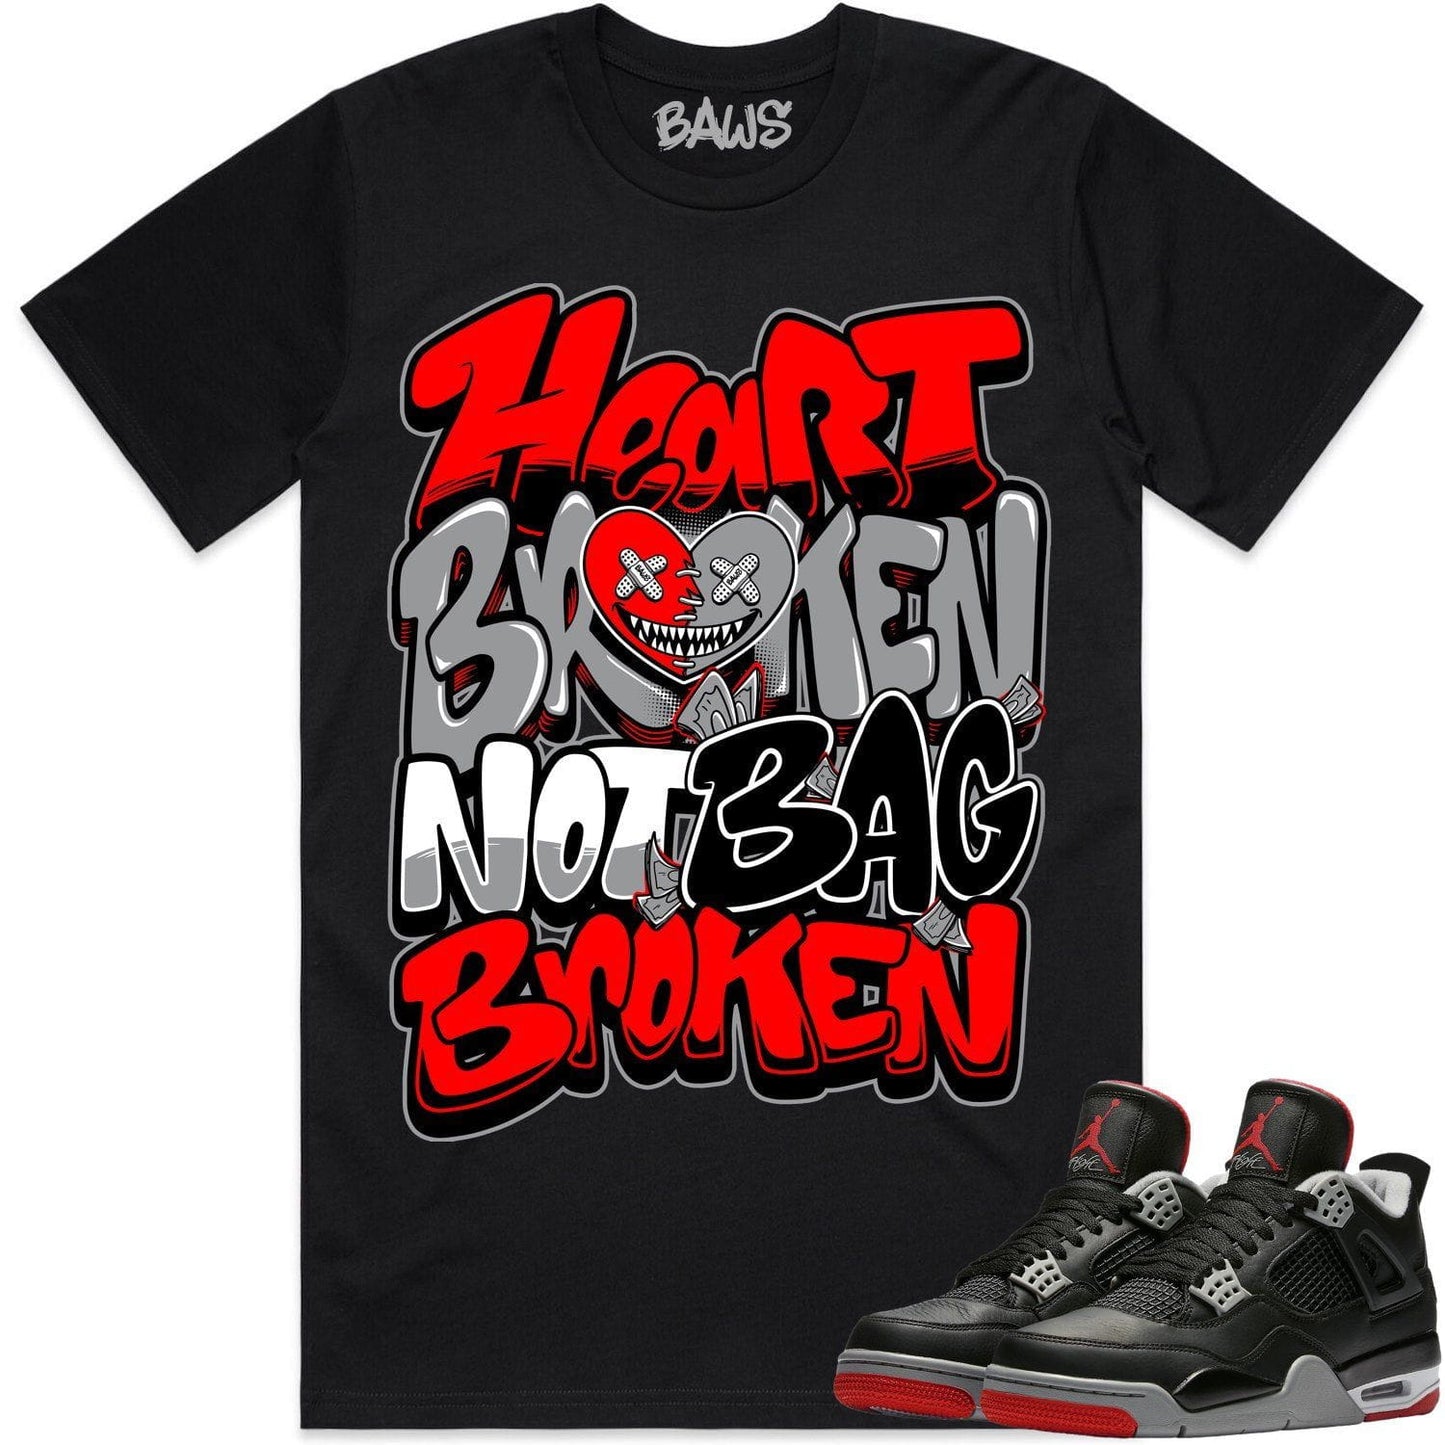 Bred 4s Shirt - Jordan 4 Reimagined Bred Shirts - Heart Broken